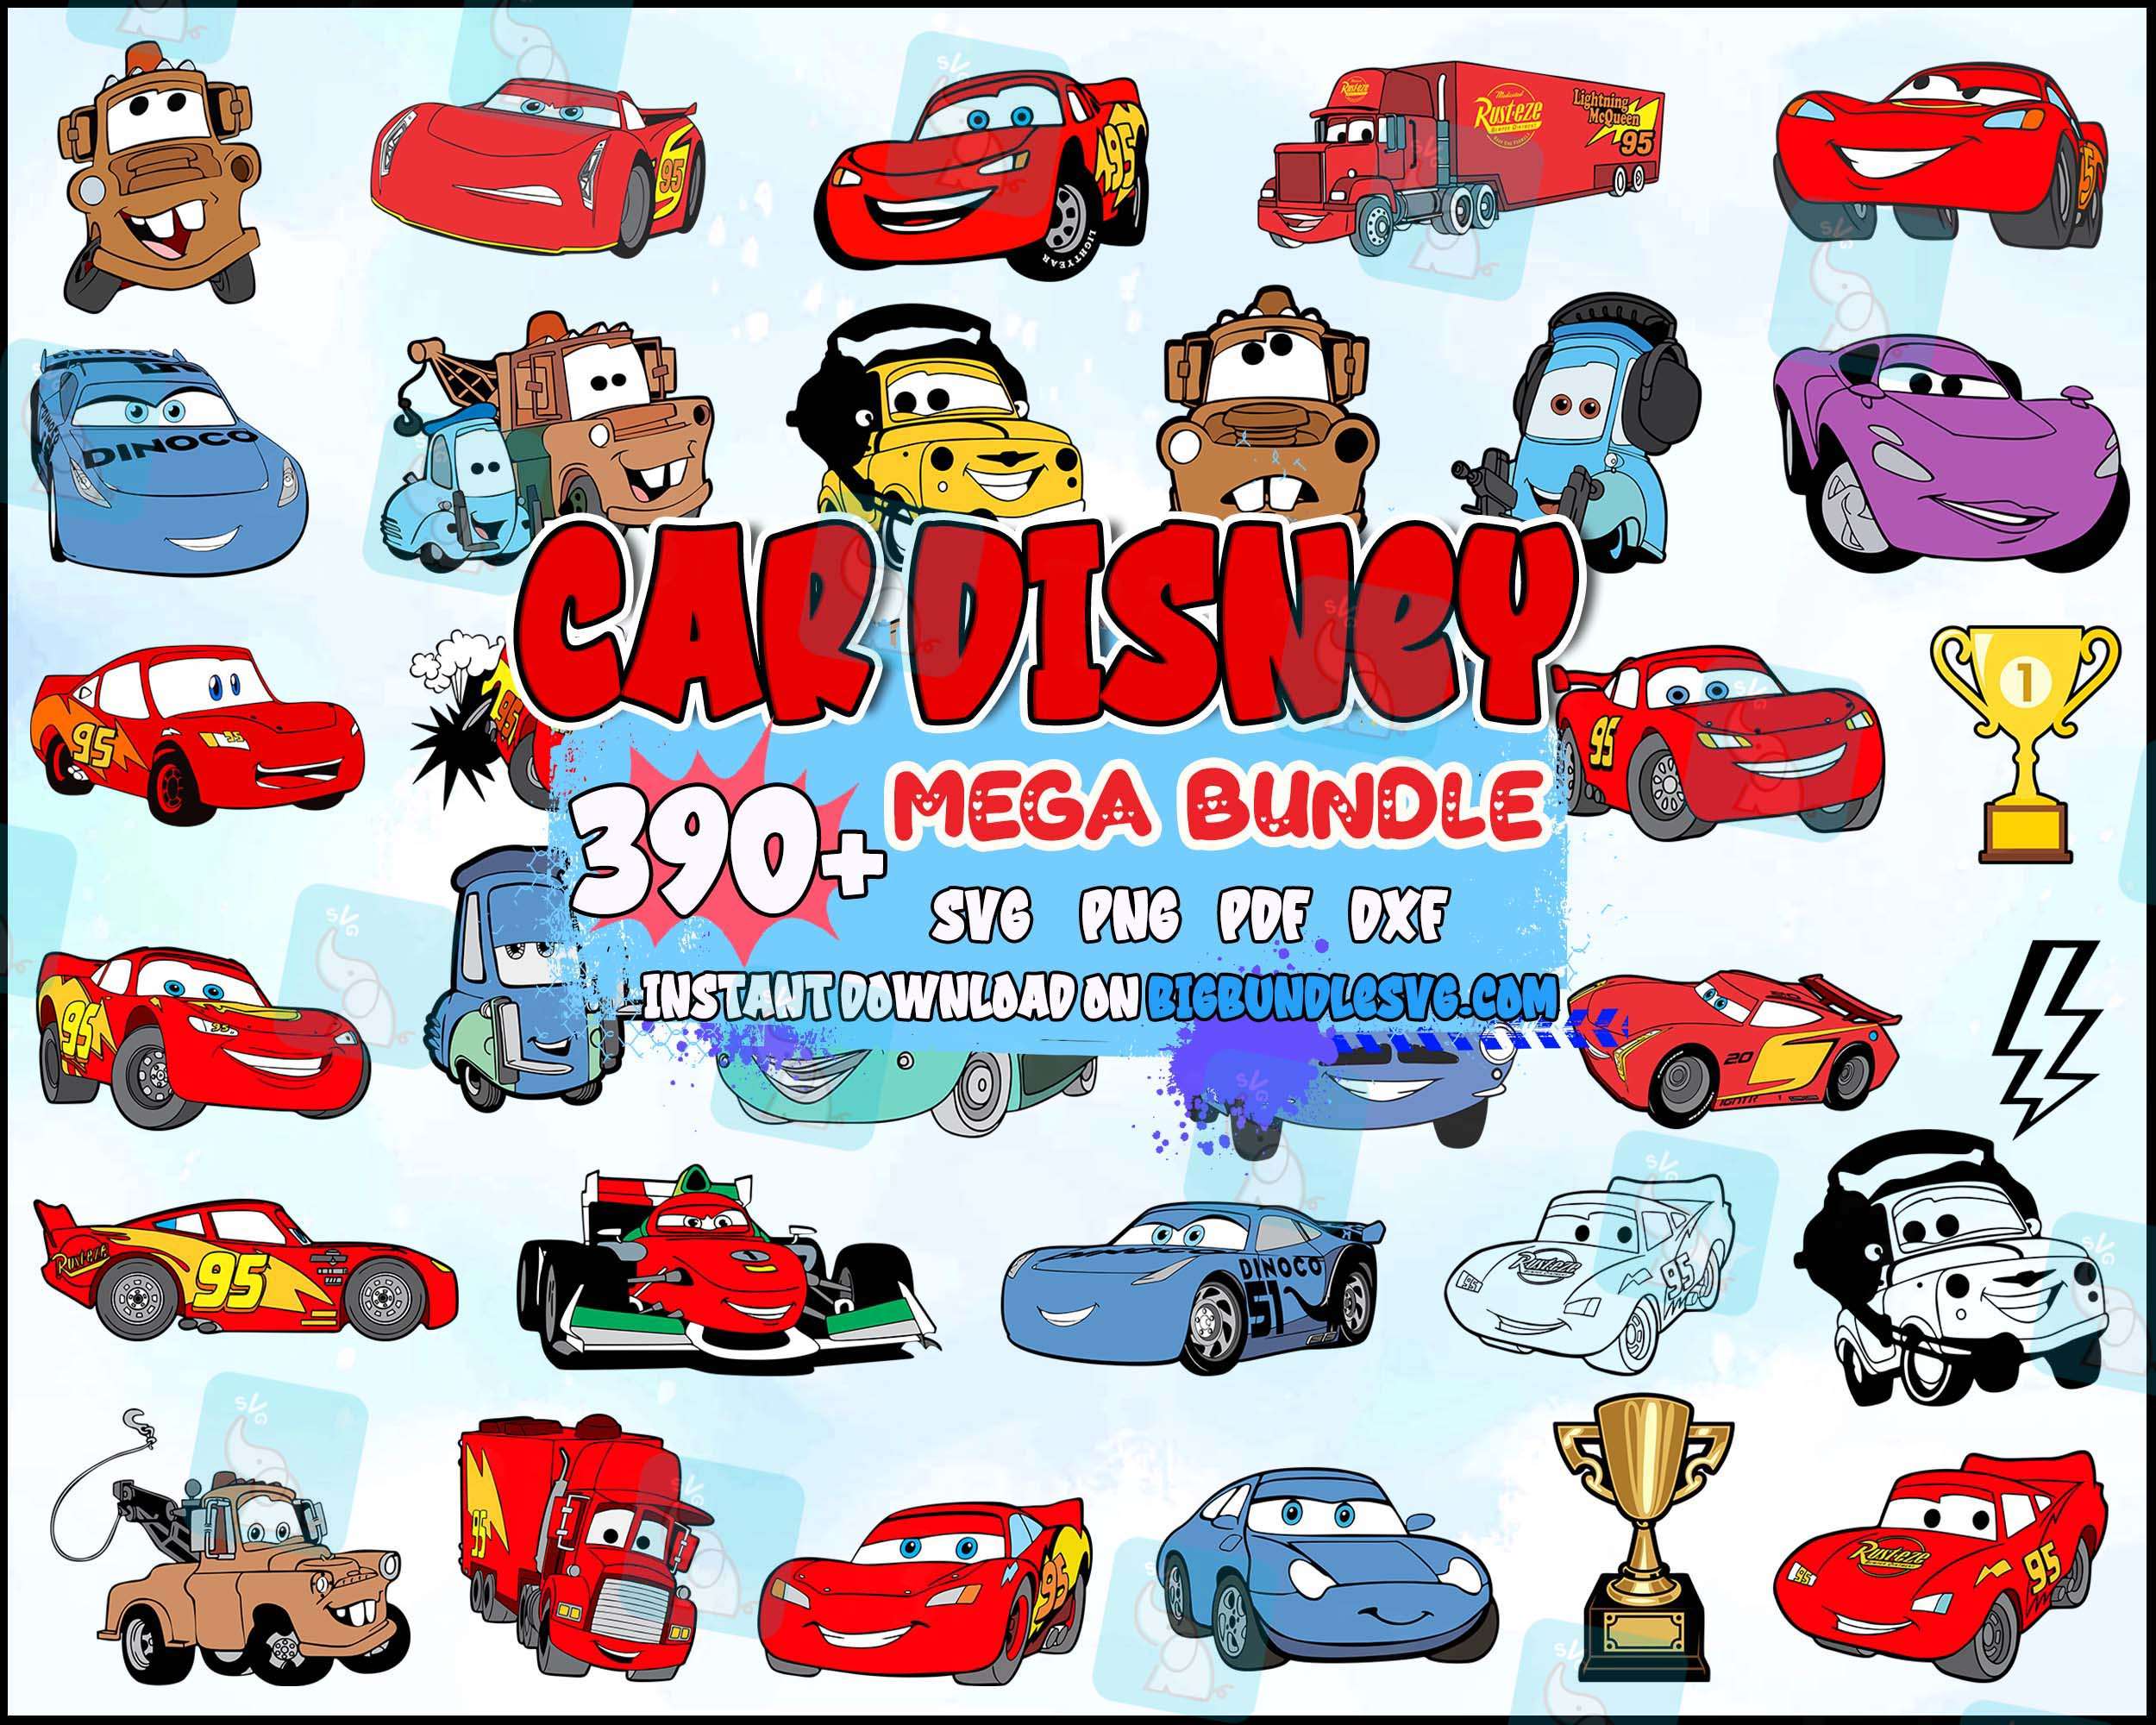 390+ Cars Disney Pixar Vector, lightning mcqueen PDF, lightning mcqueen, SVG